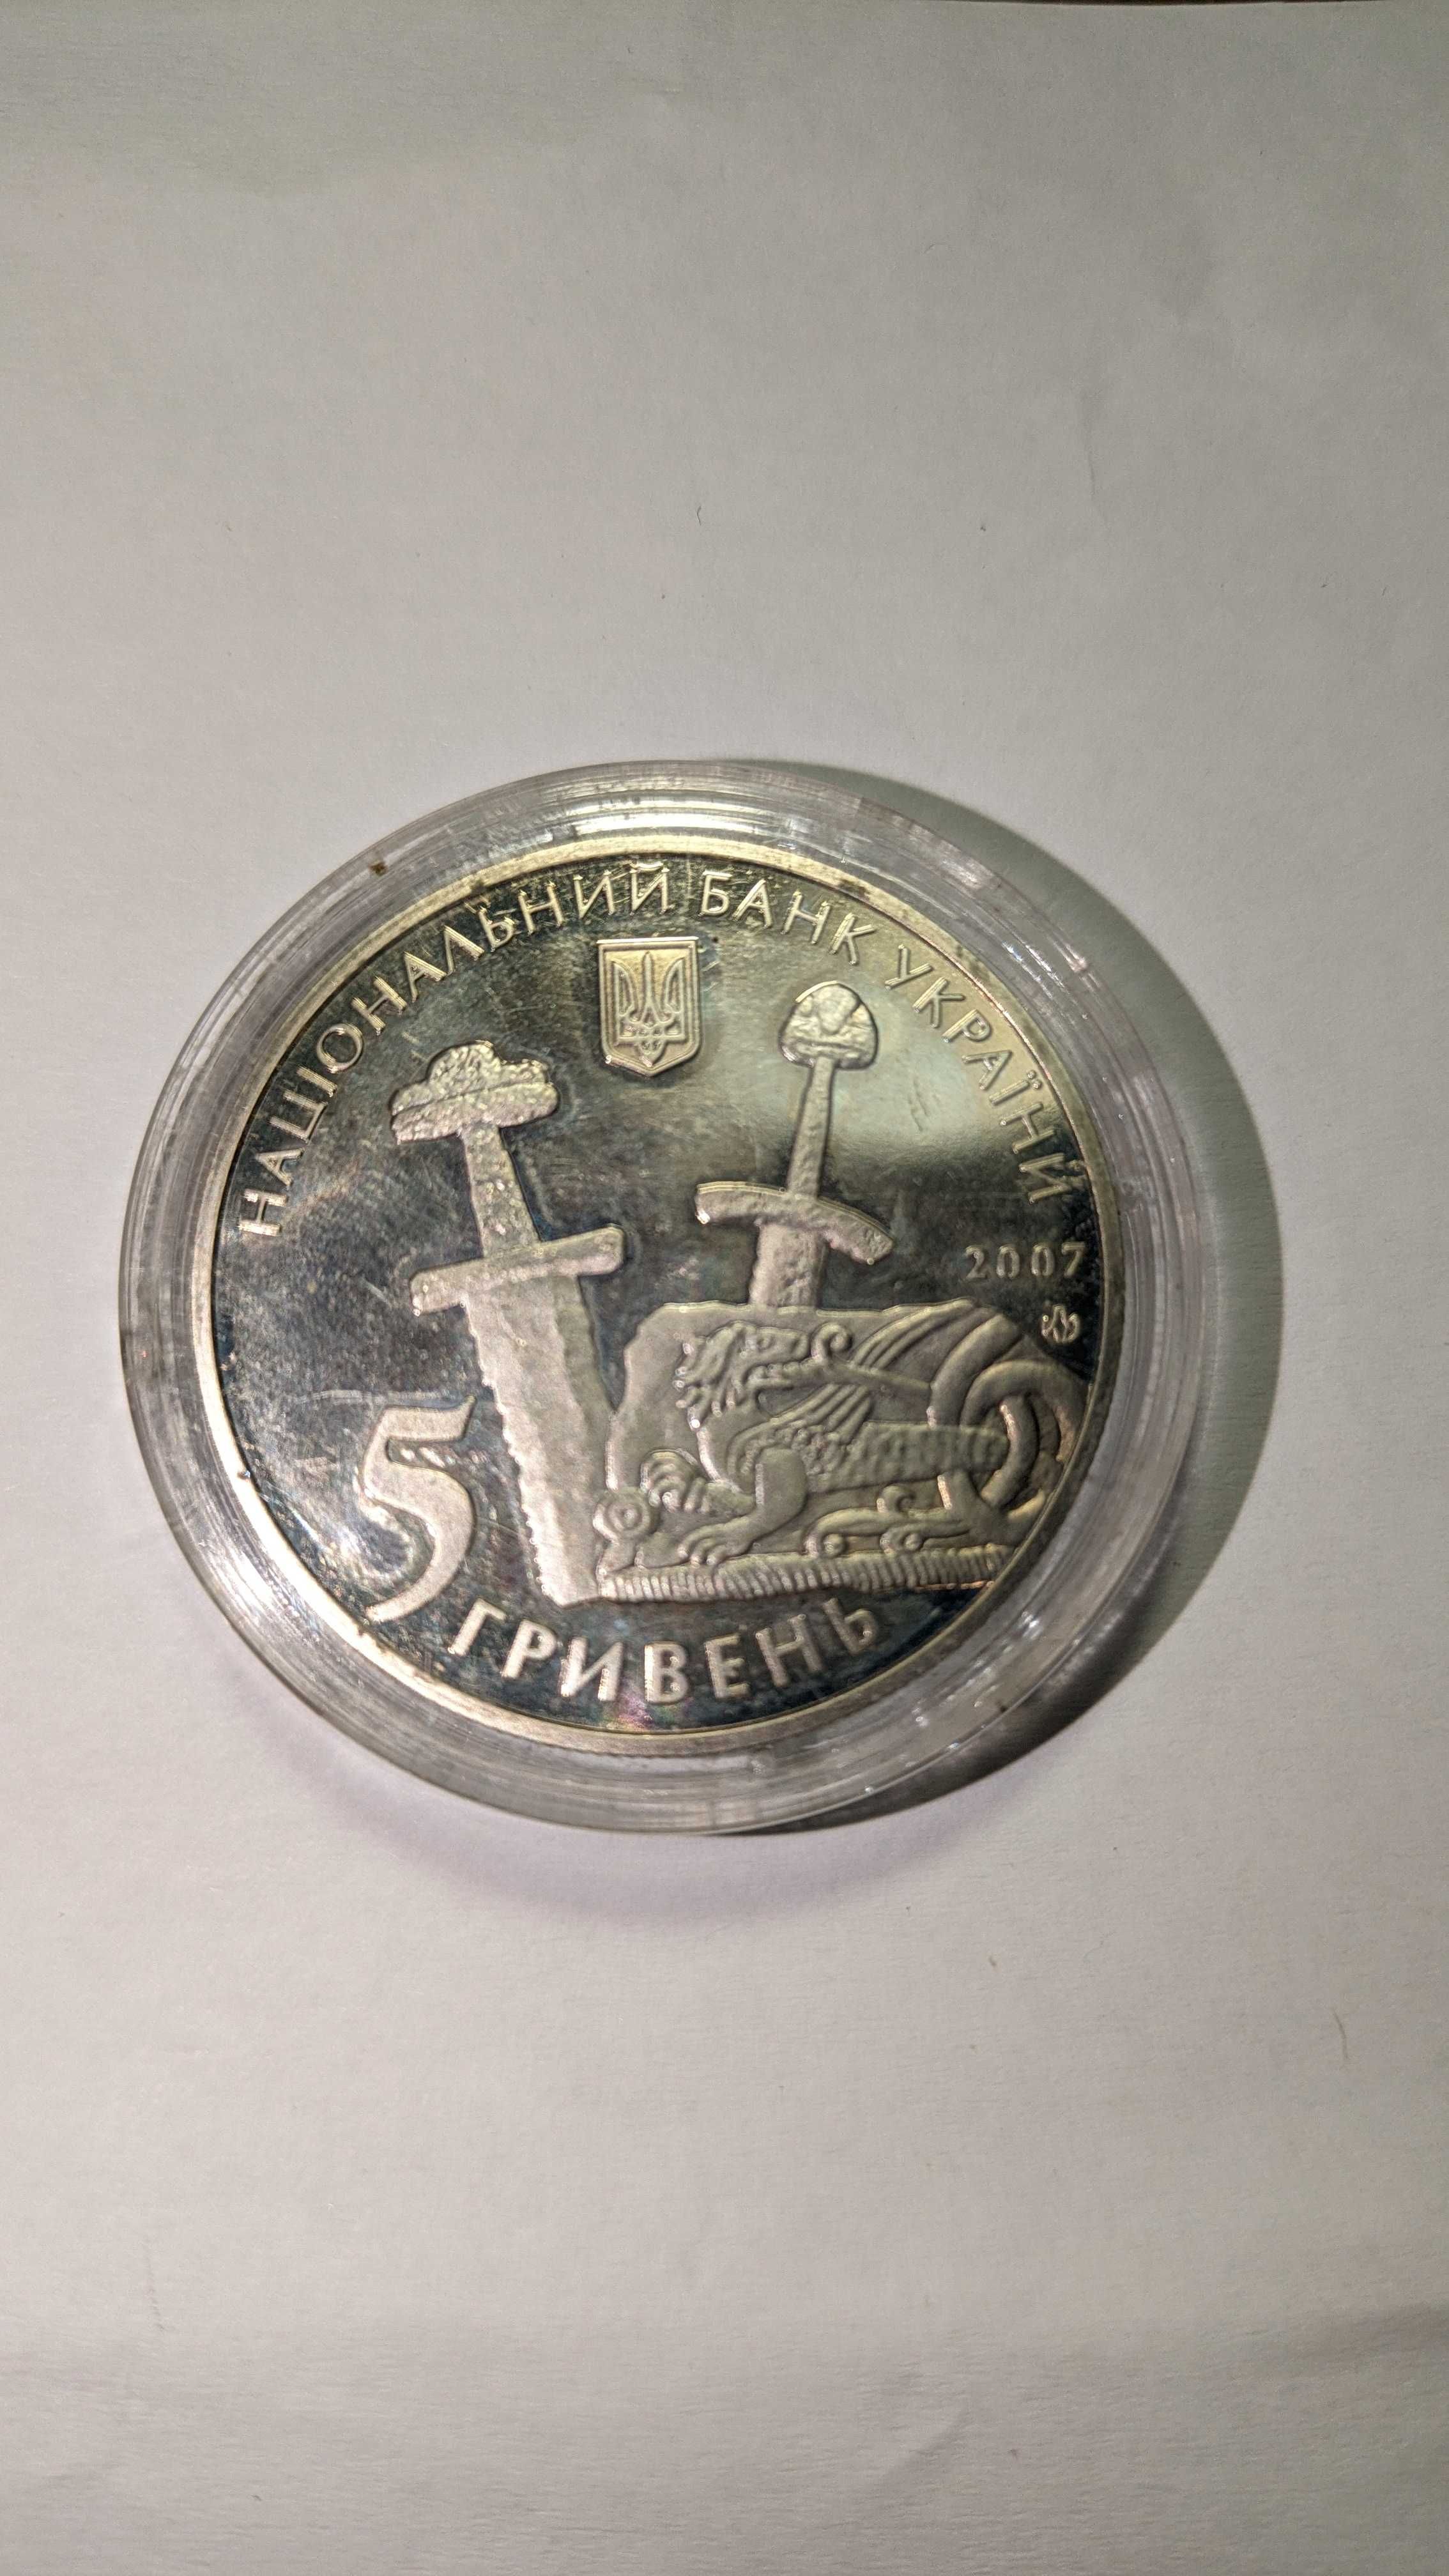 Ювілейна монета України 5 гривень Чернігову 1100 років 2007 року